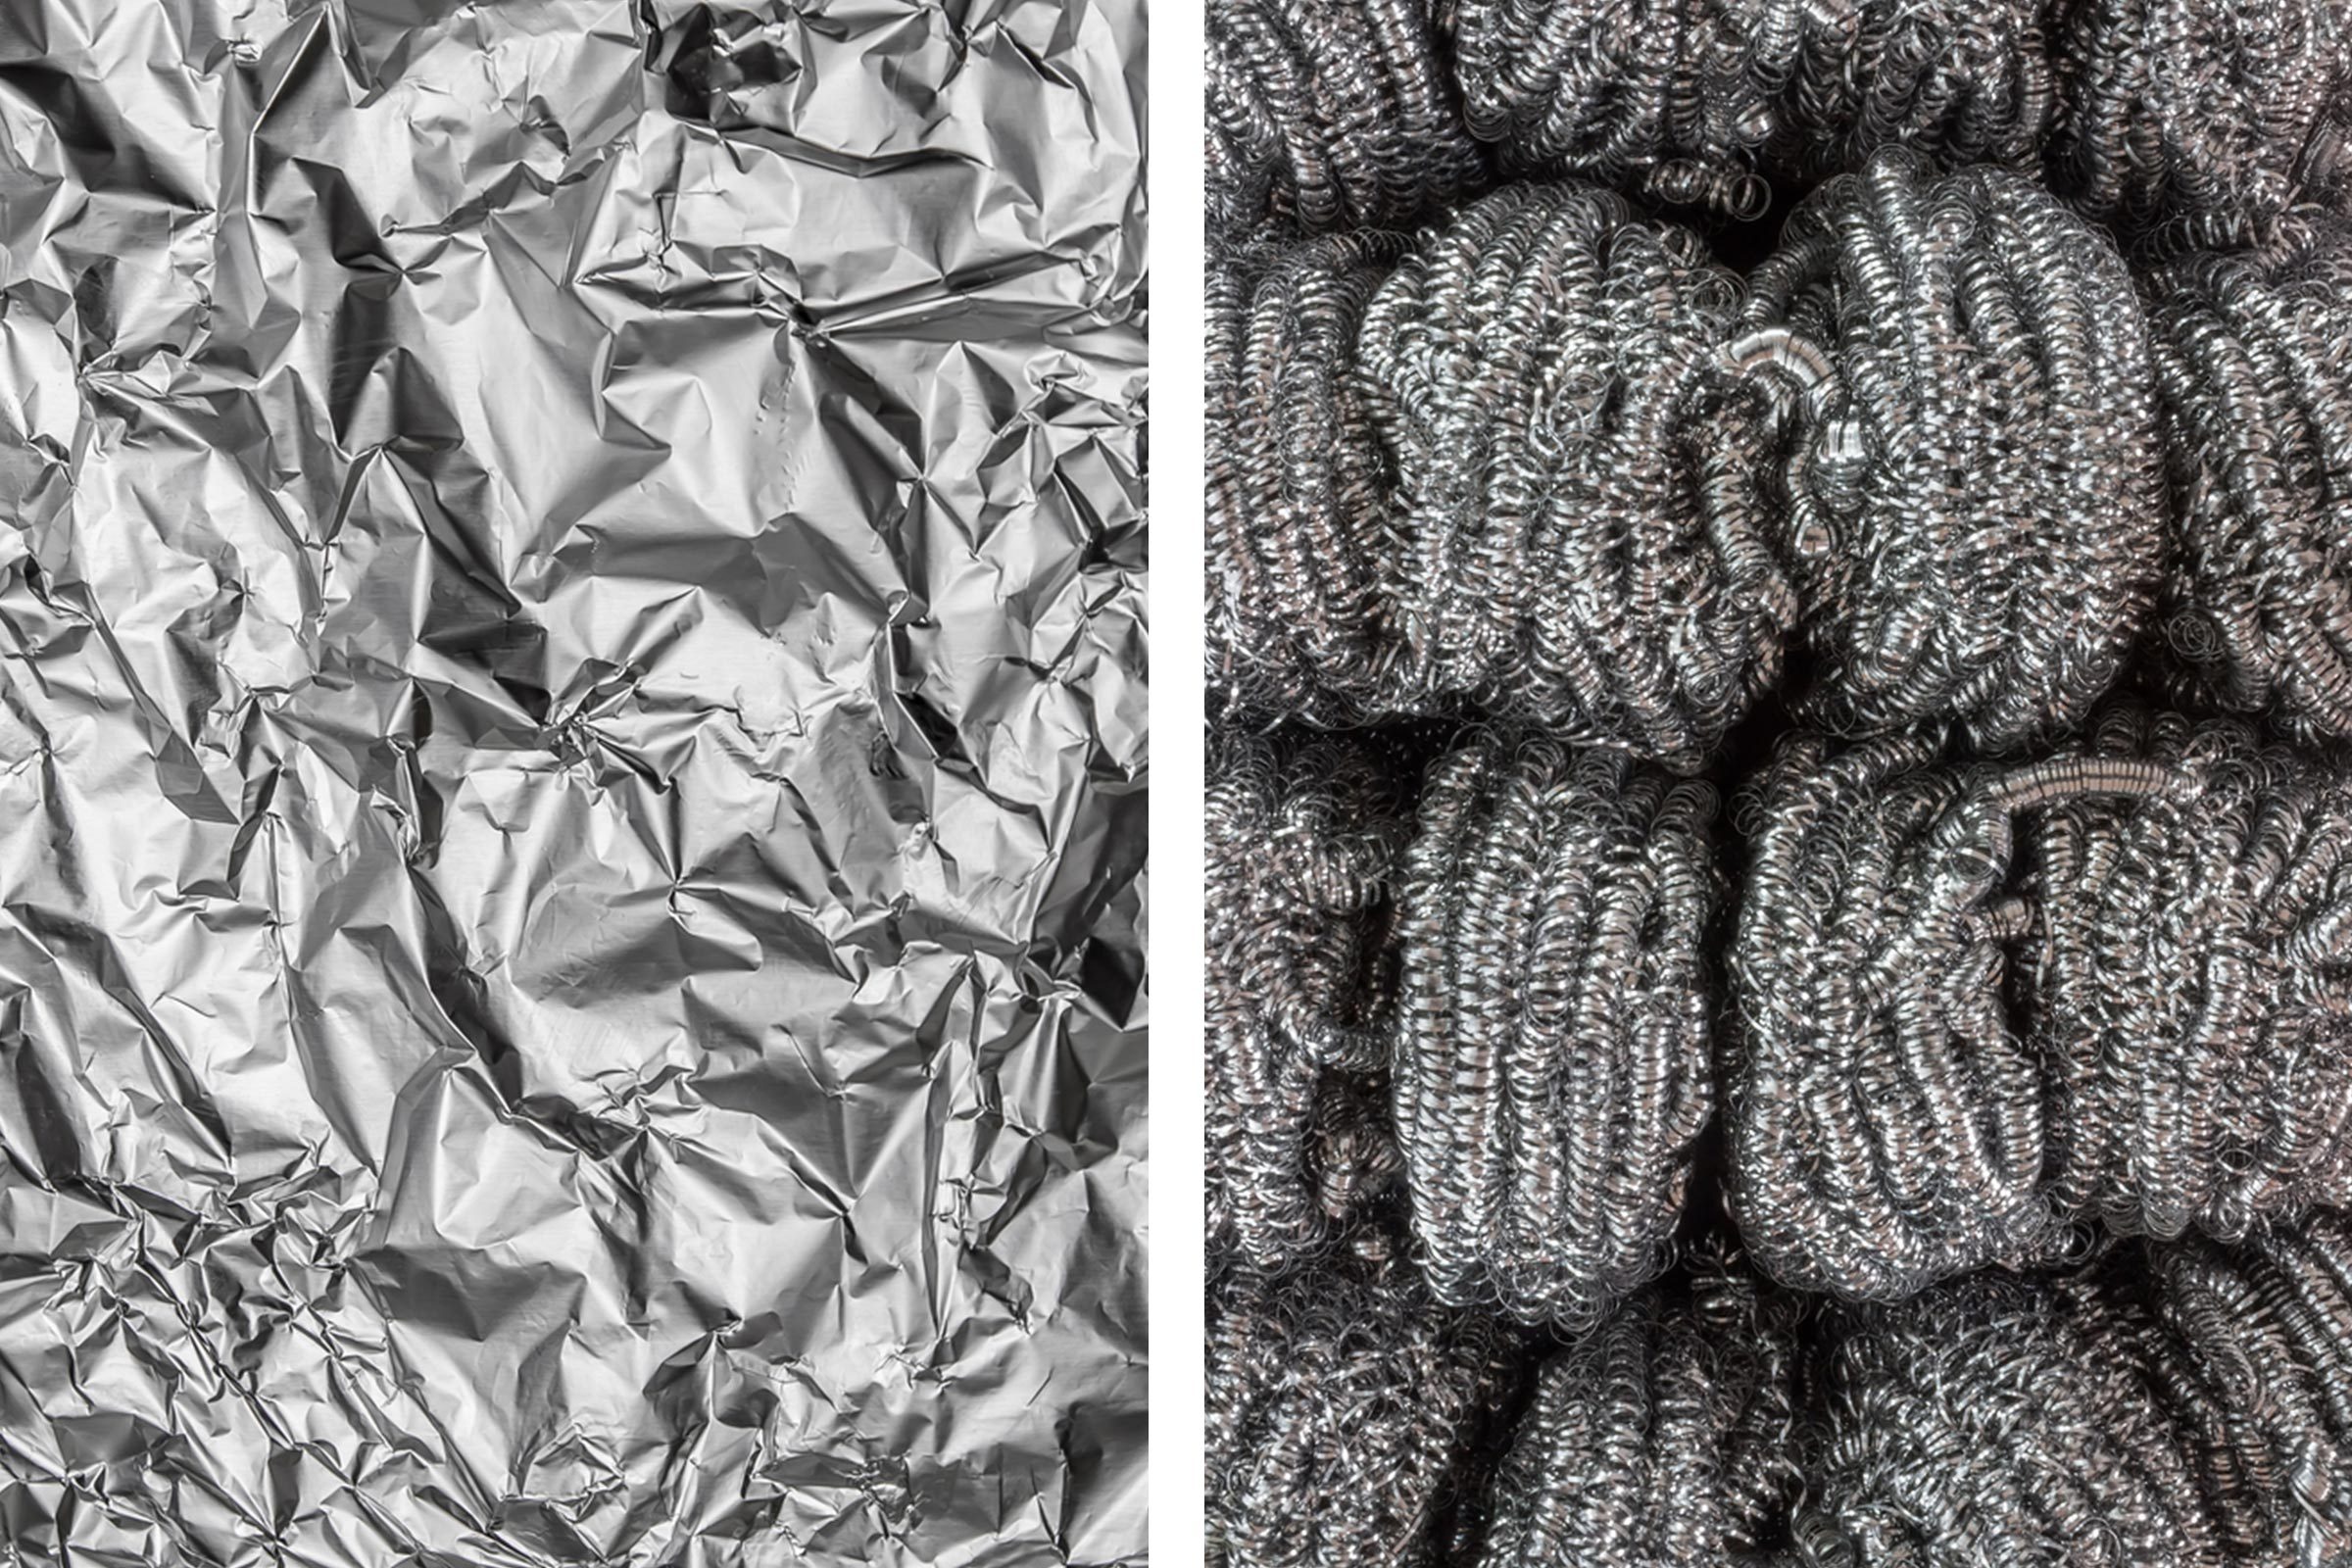 40 Aluminum Foil Hacks You'll Wish You Knew Sooner